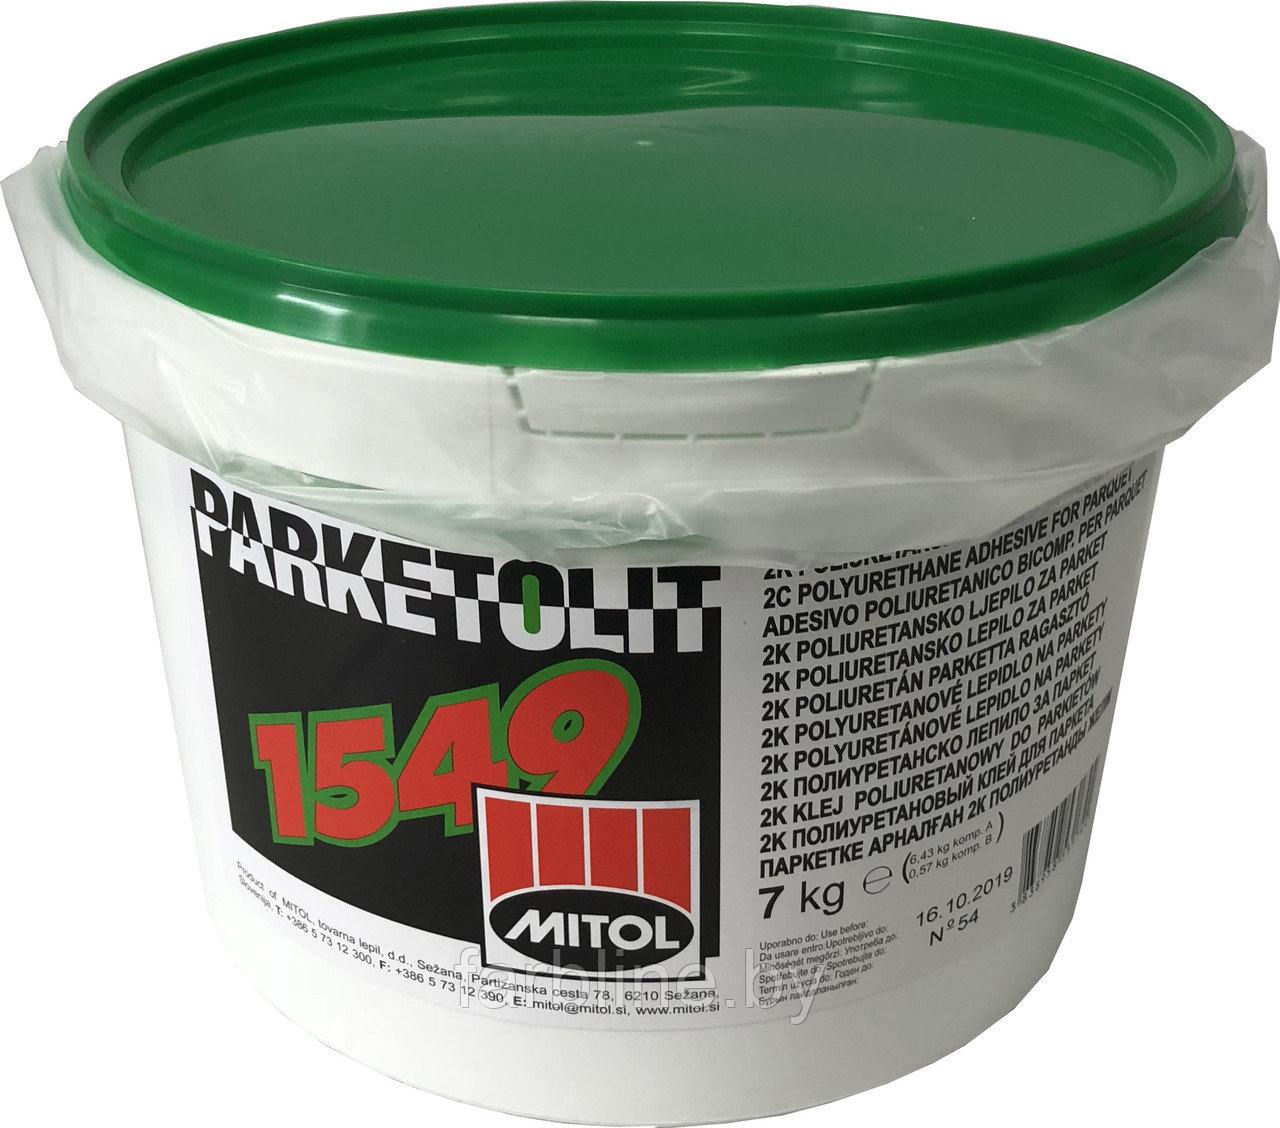 Двухкомпонентный эпоксидно-полиуретановый клей для паркета PARKETOLIT 1549 (Упаковка  14 кг.)